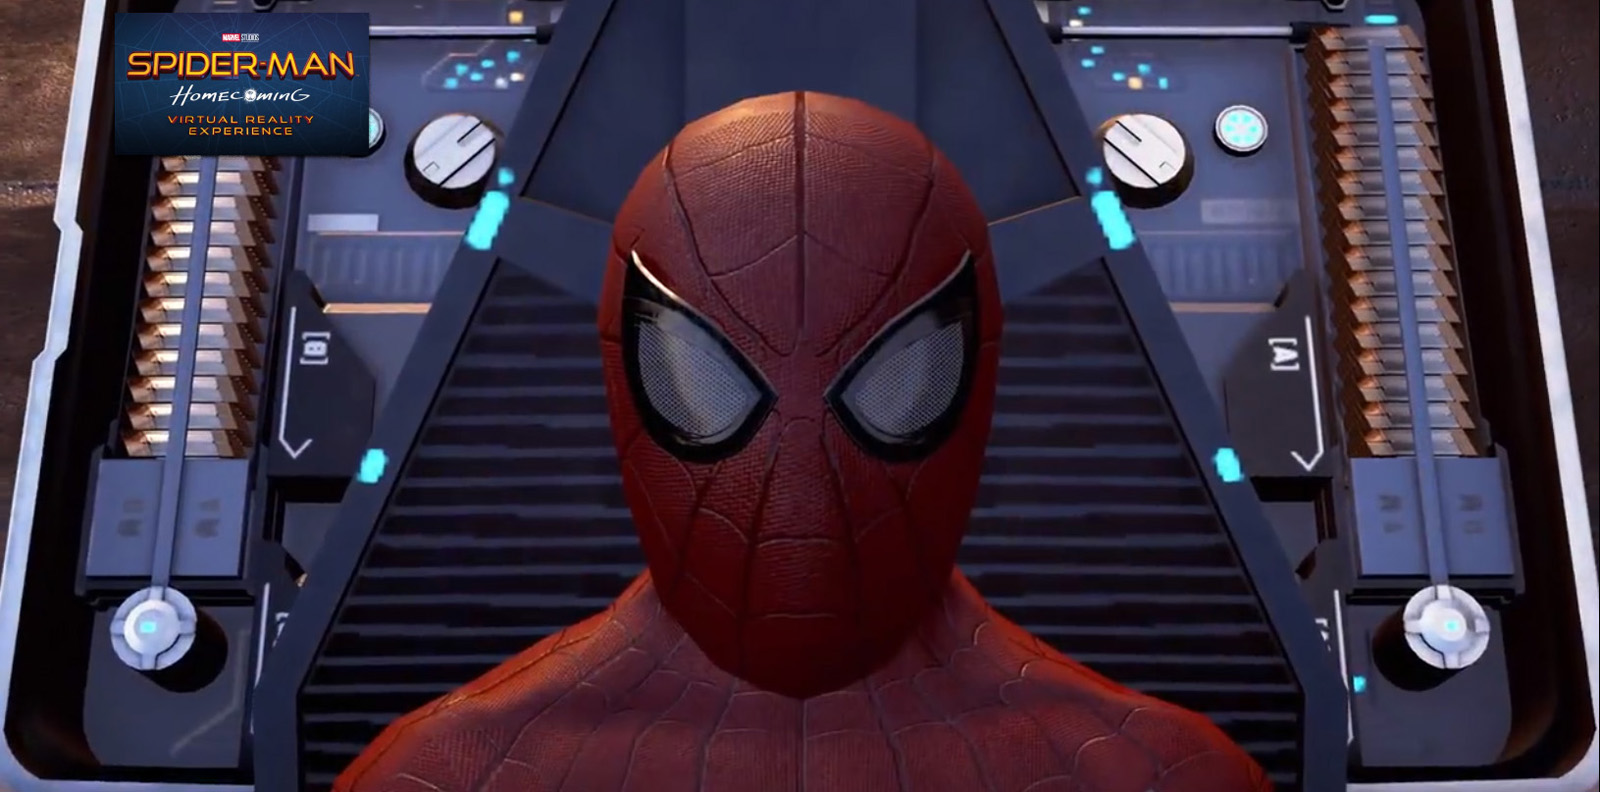 Spider-Man VR